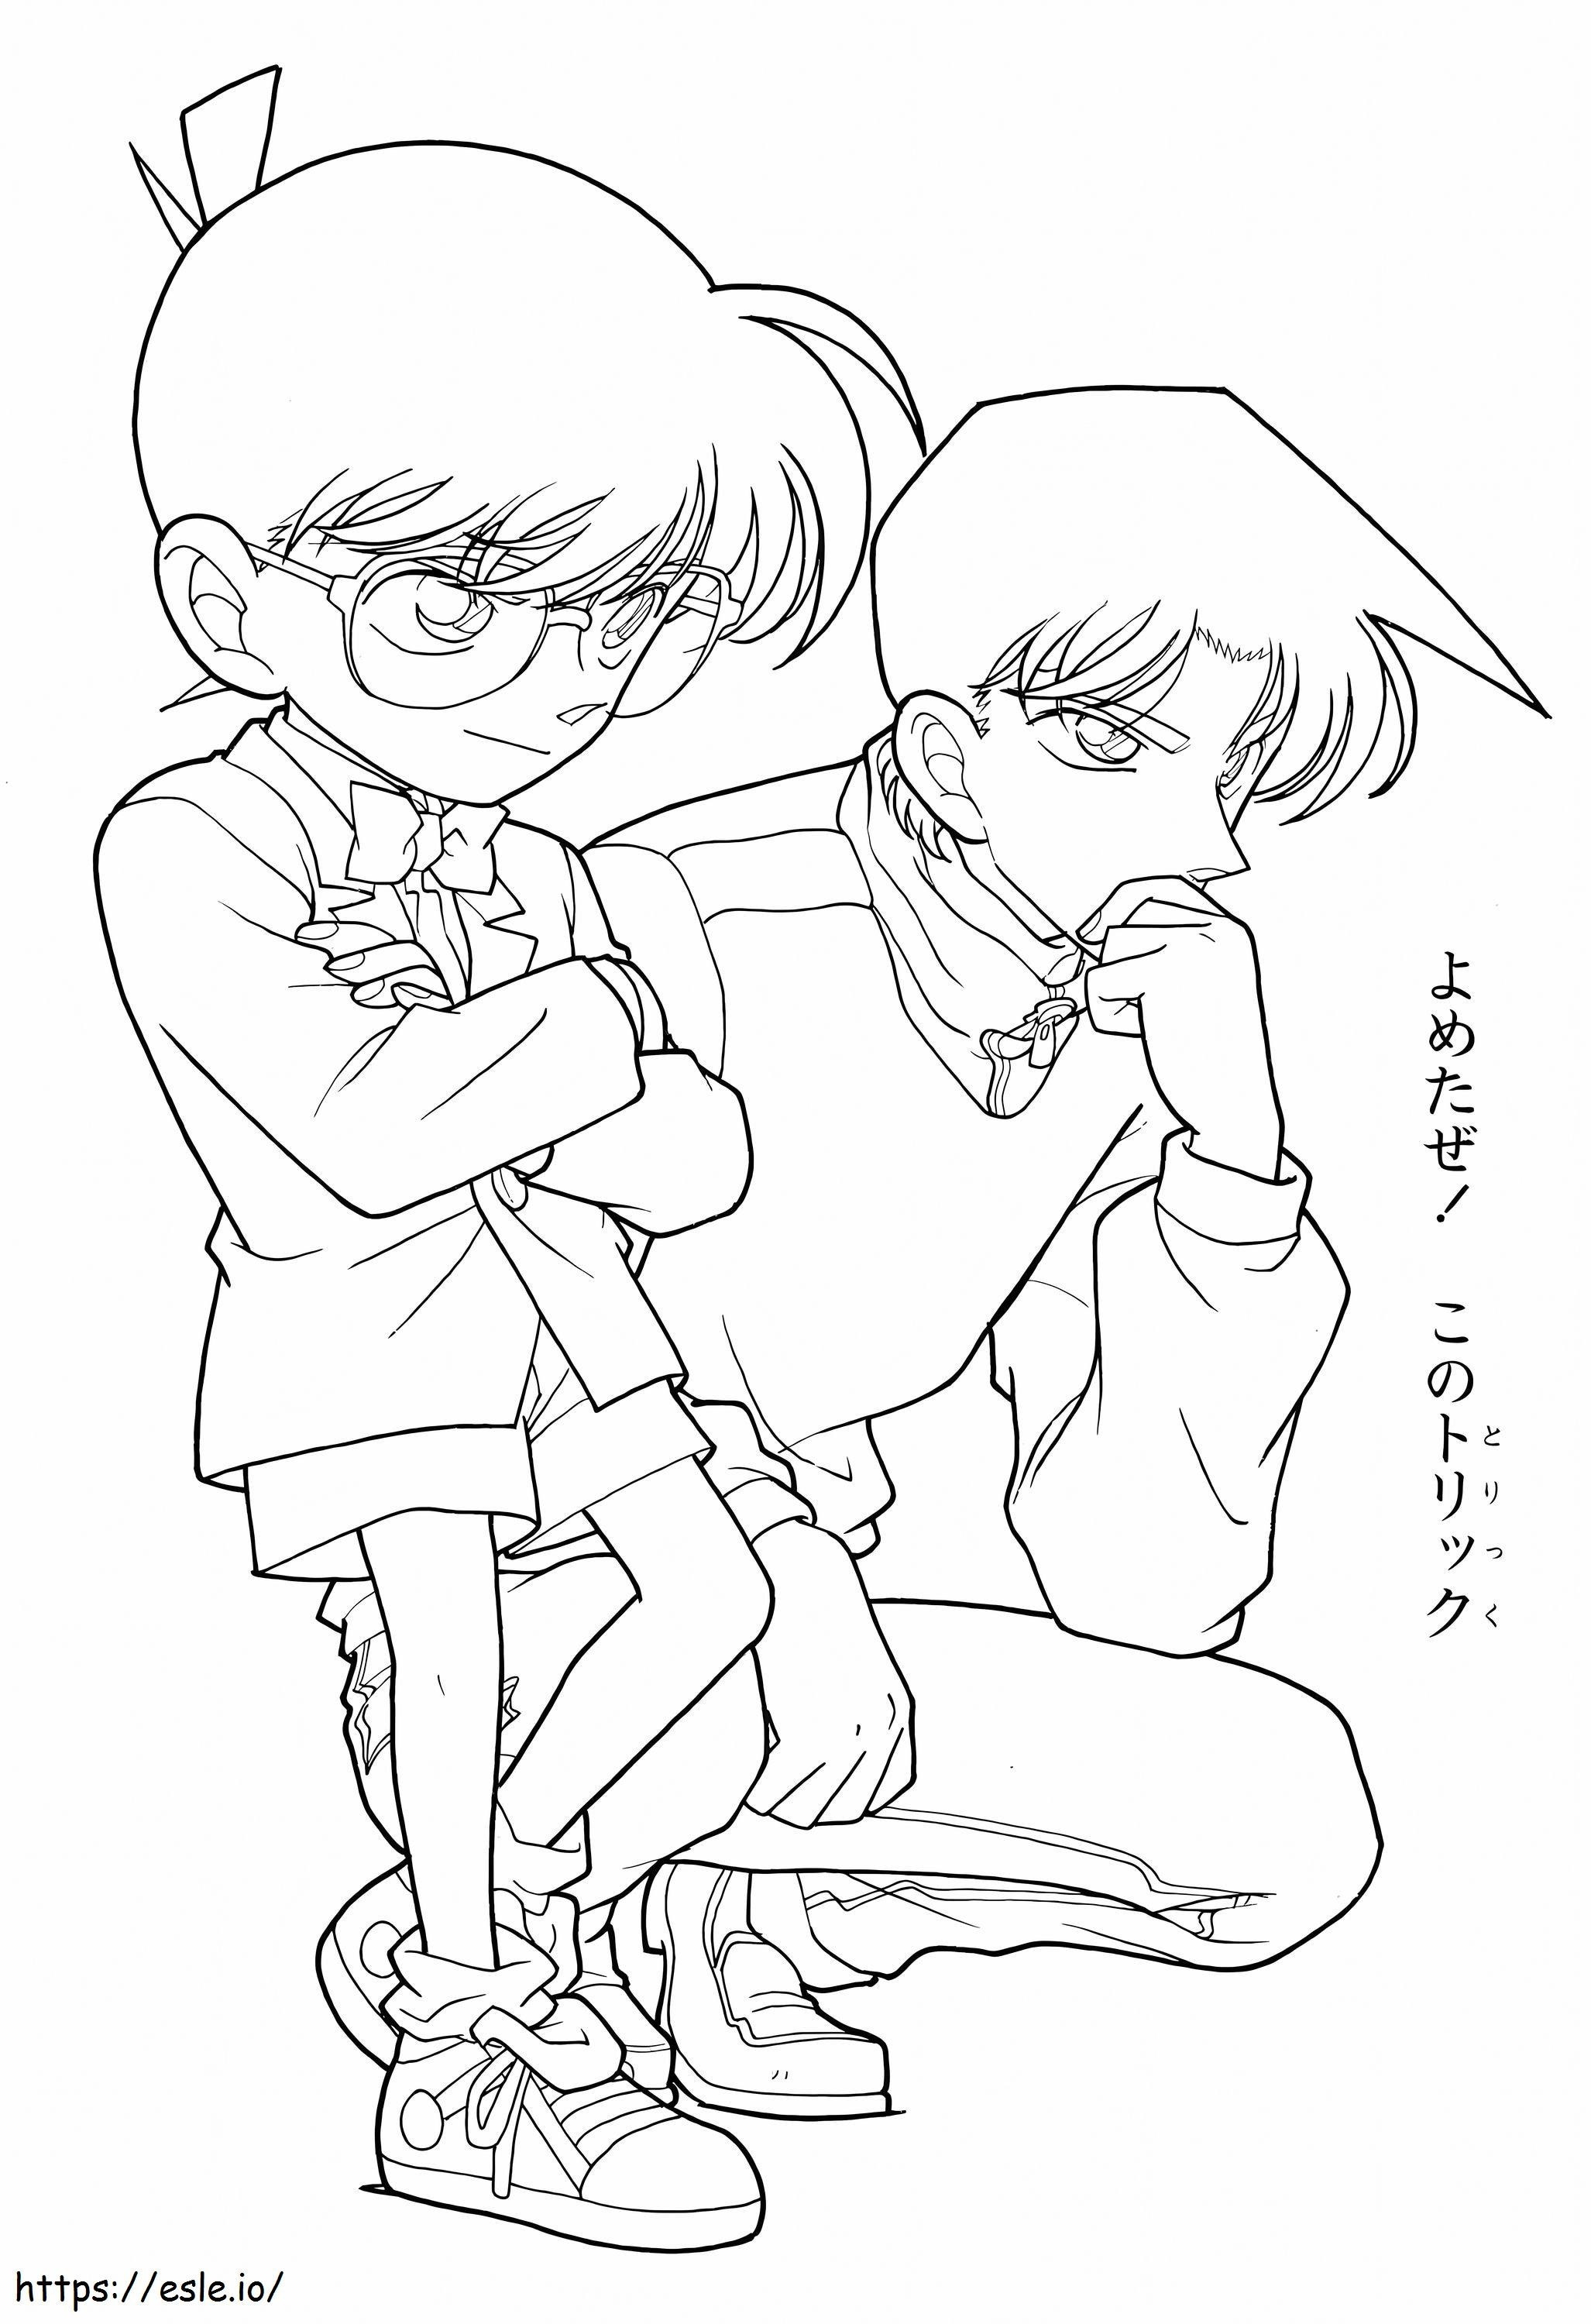 Conan e Shinichi da colorare